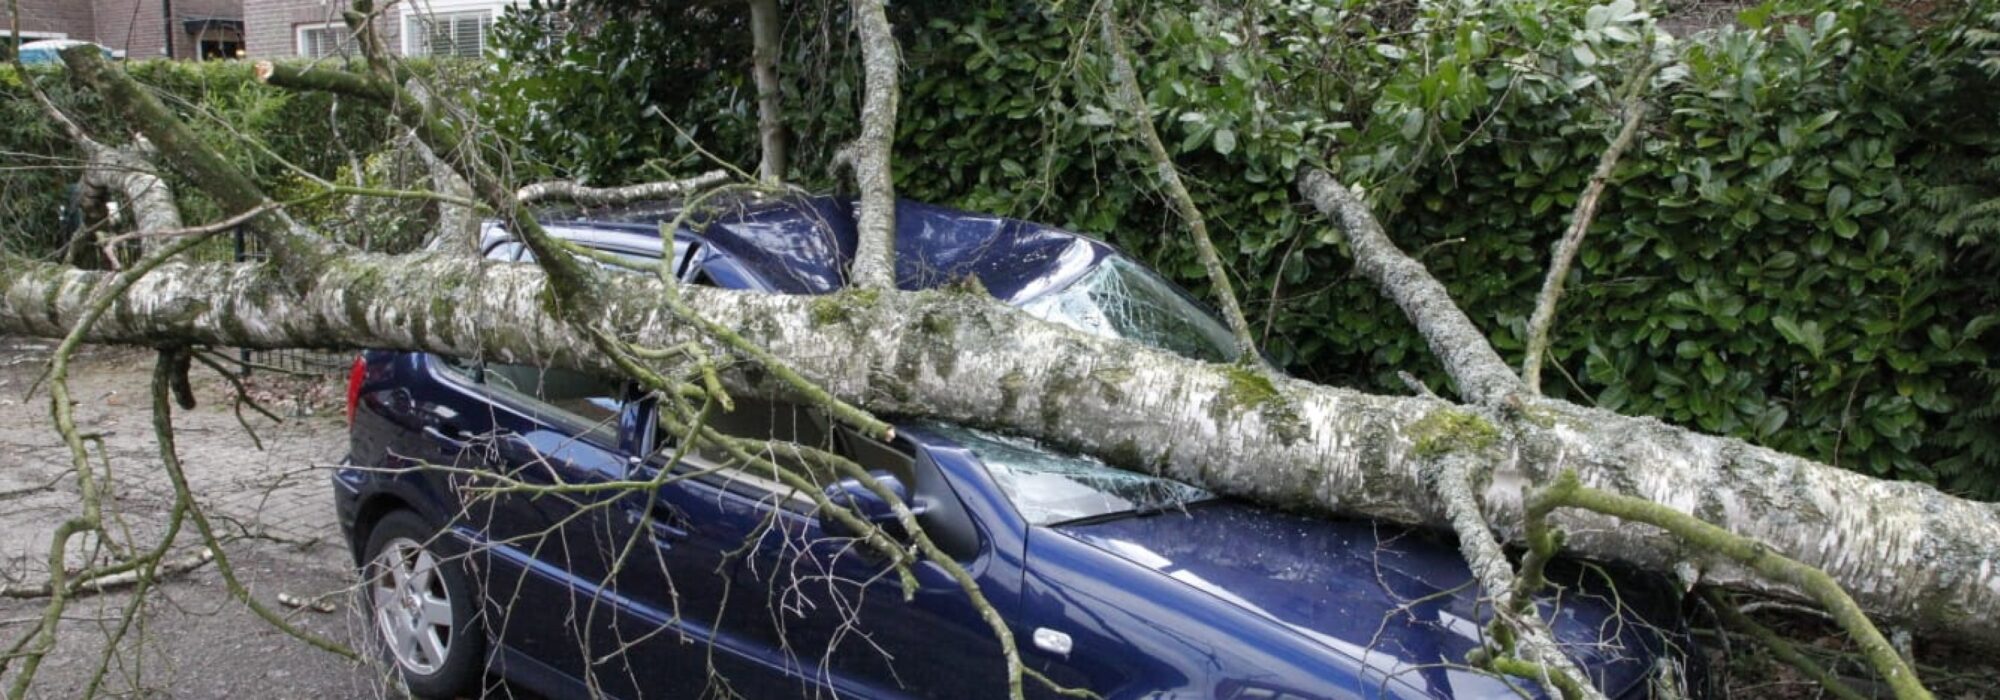 storm schade auto geraakt door boom